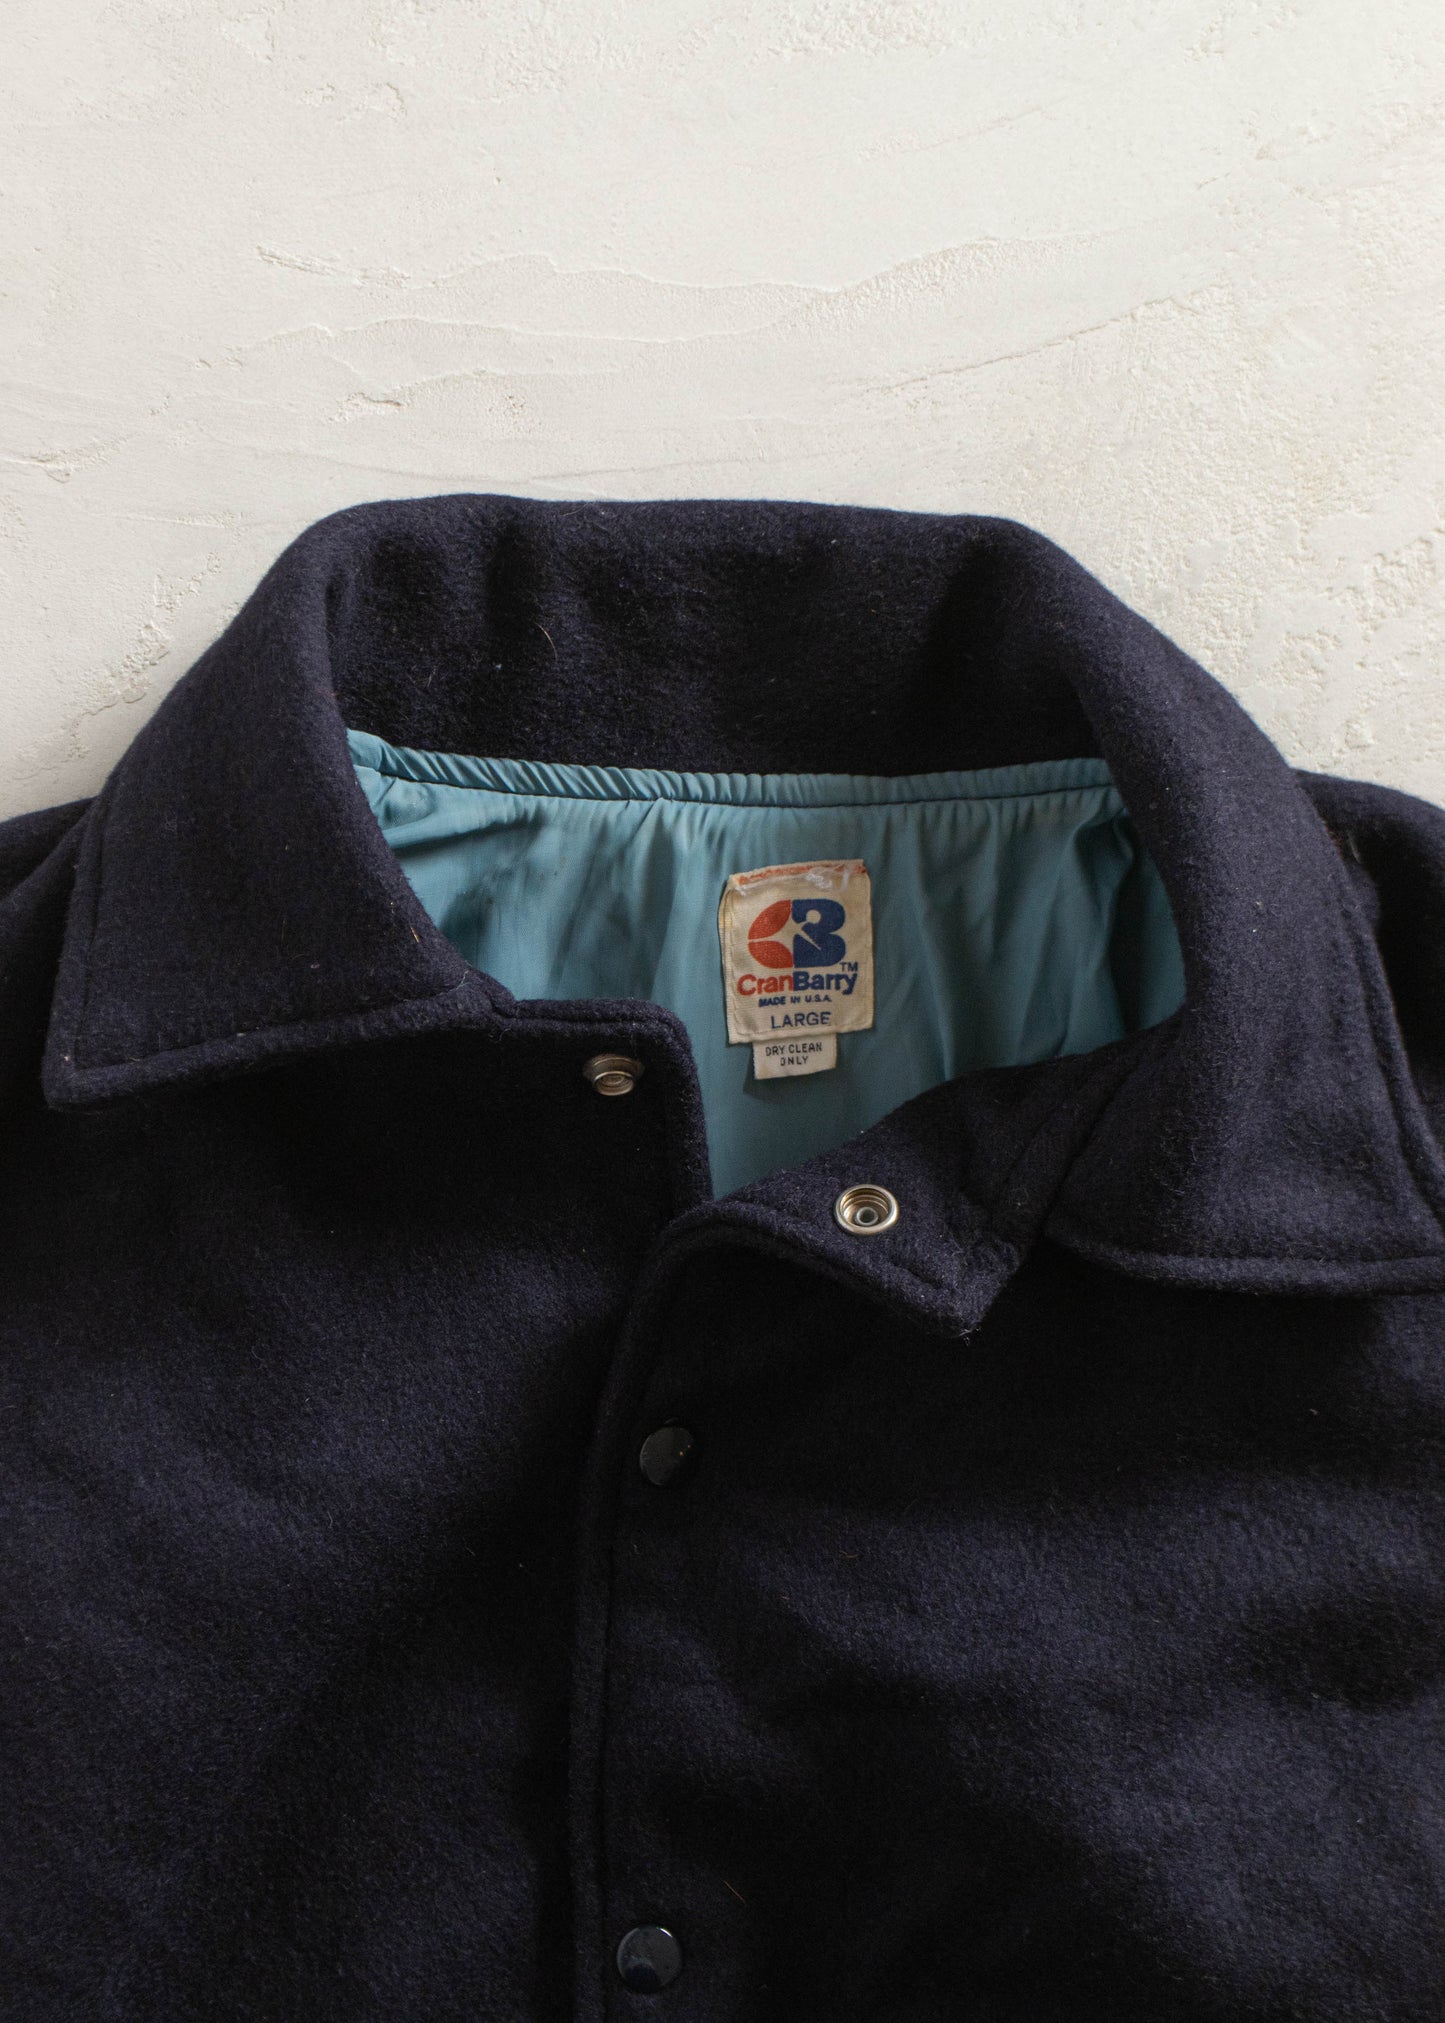 Vintage 1980s CranBarry Varsity Jacket Size L/XL